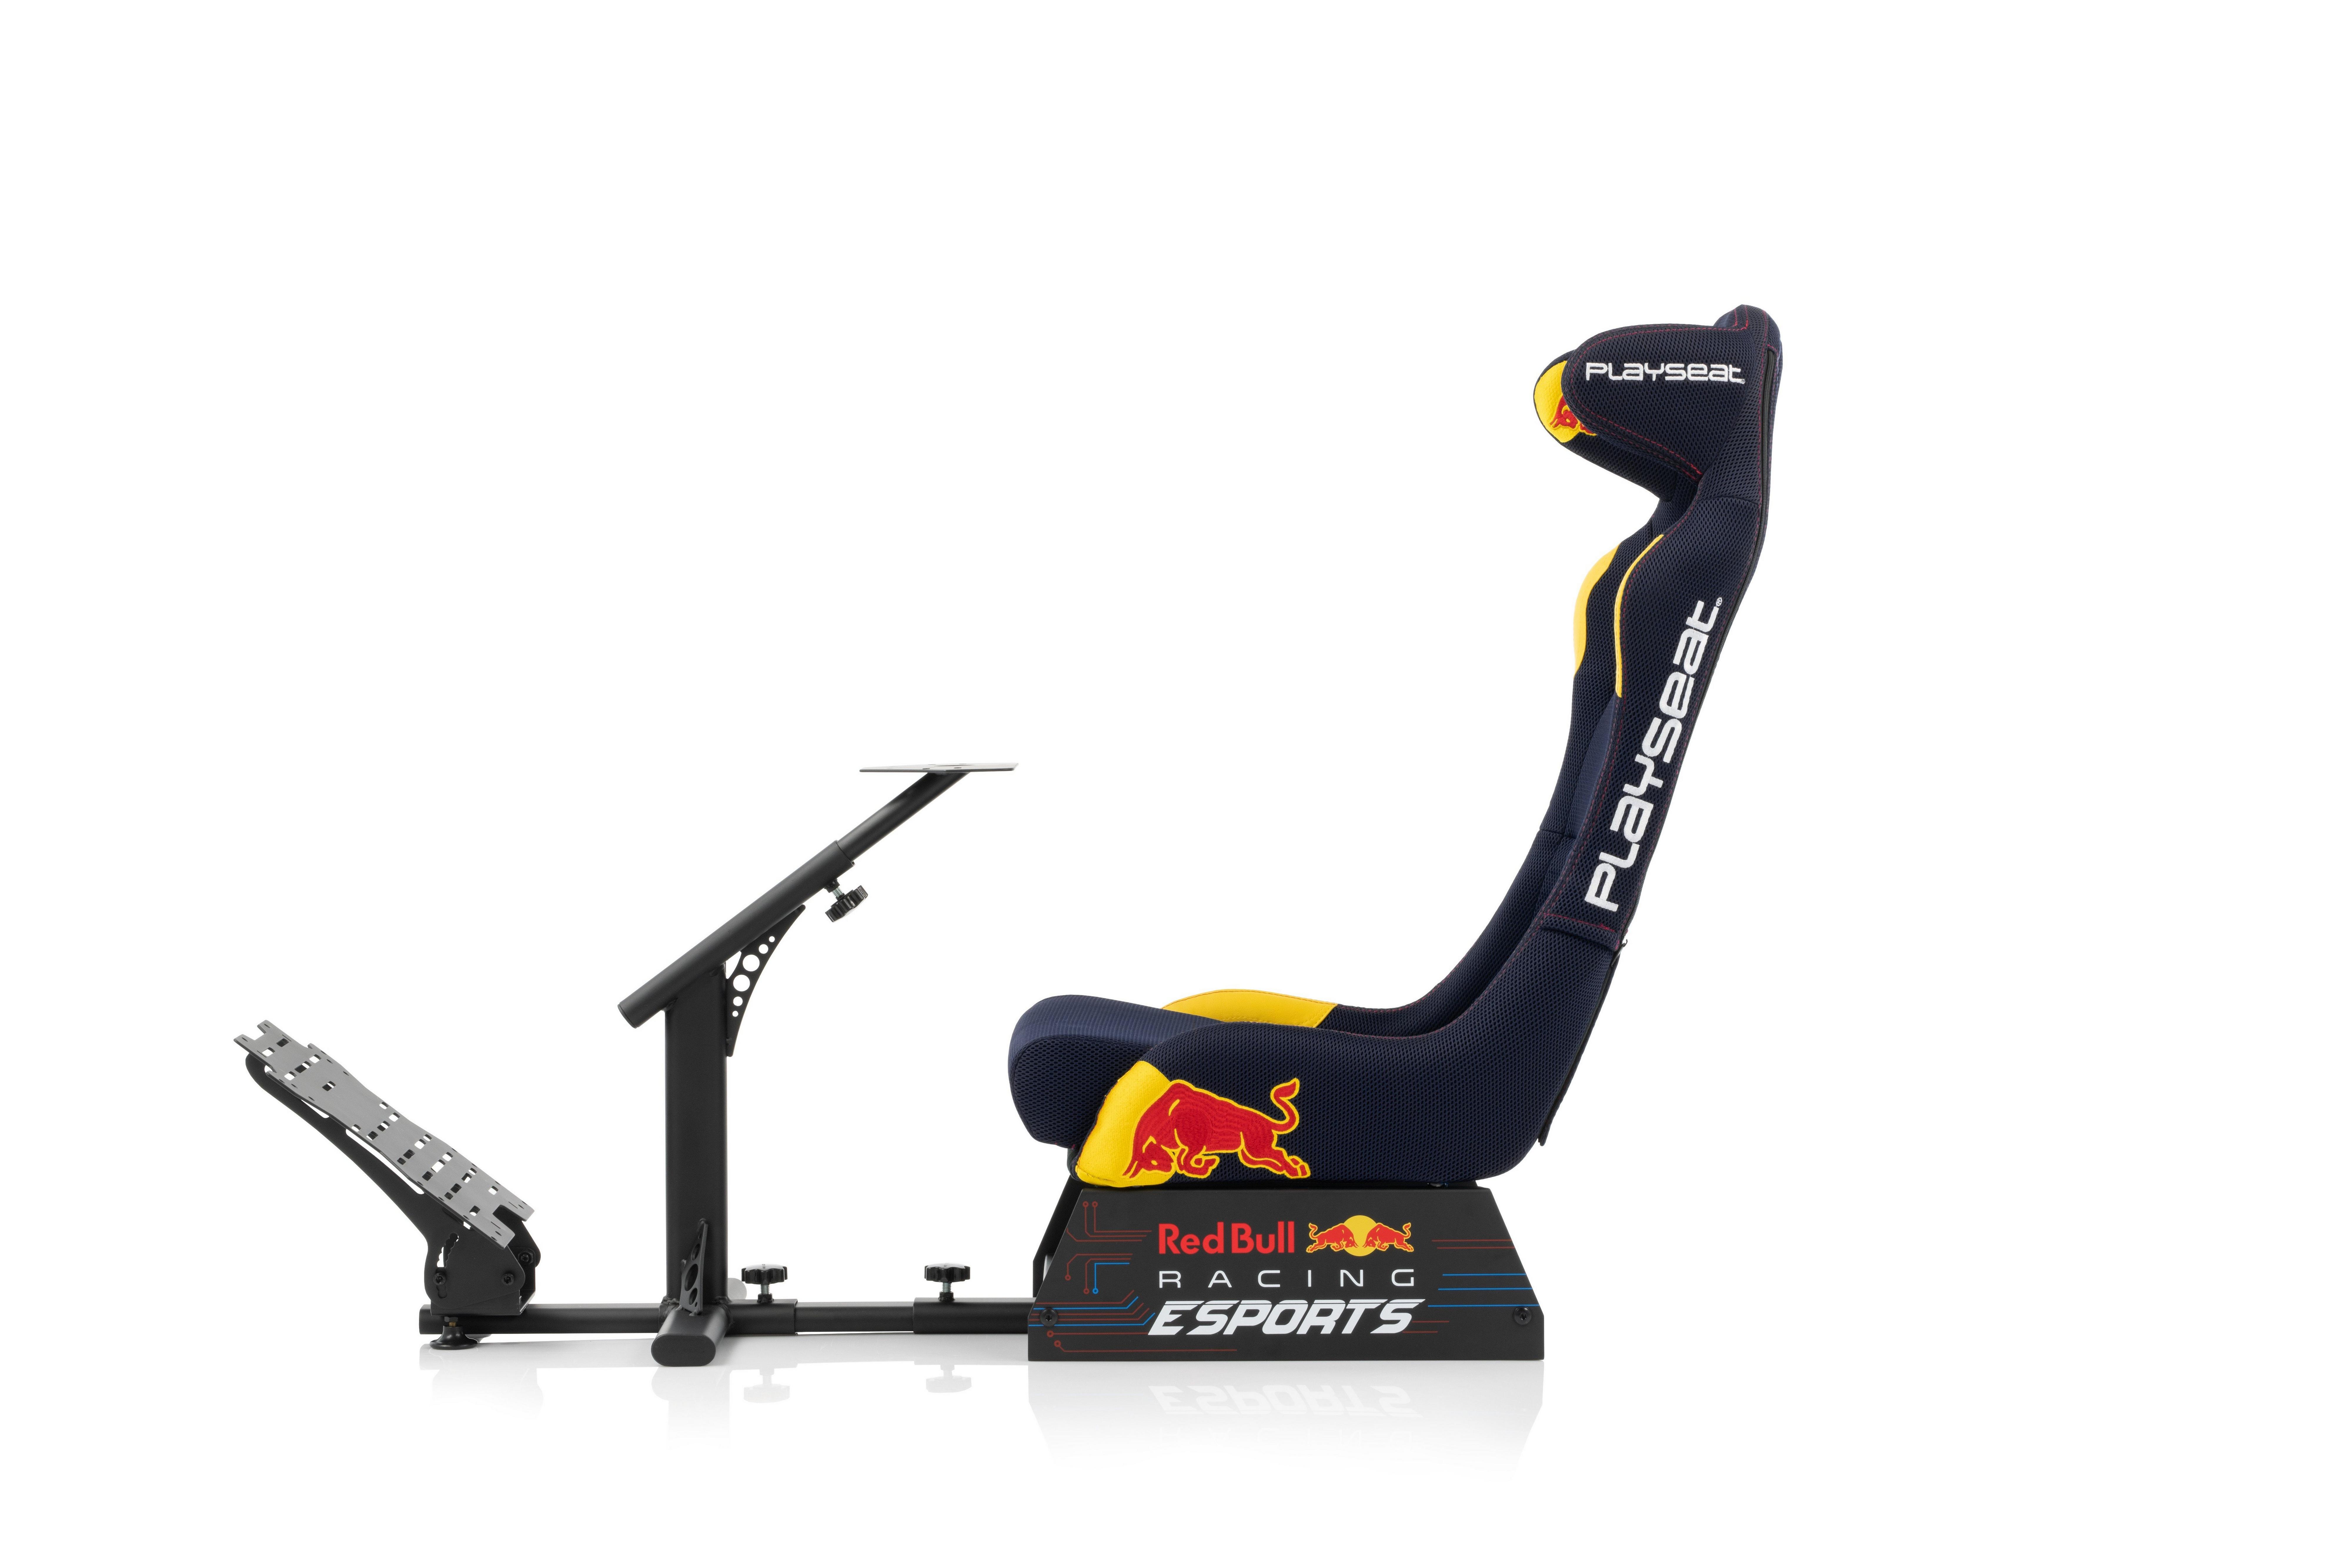 https://media.gamestop.com/i/gamestop/11206560_ALT01/Playseat-Evolution-PRO-Red-Bull-Racing-Esports-Racing-Simulator-Chair?$pdp$